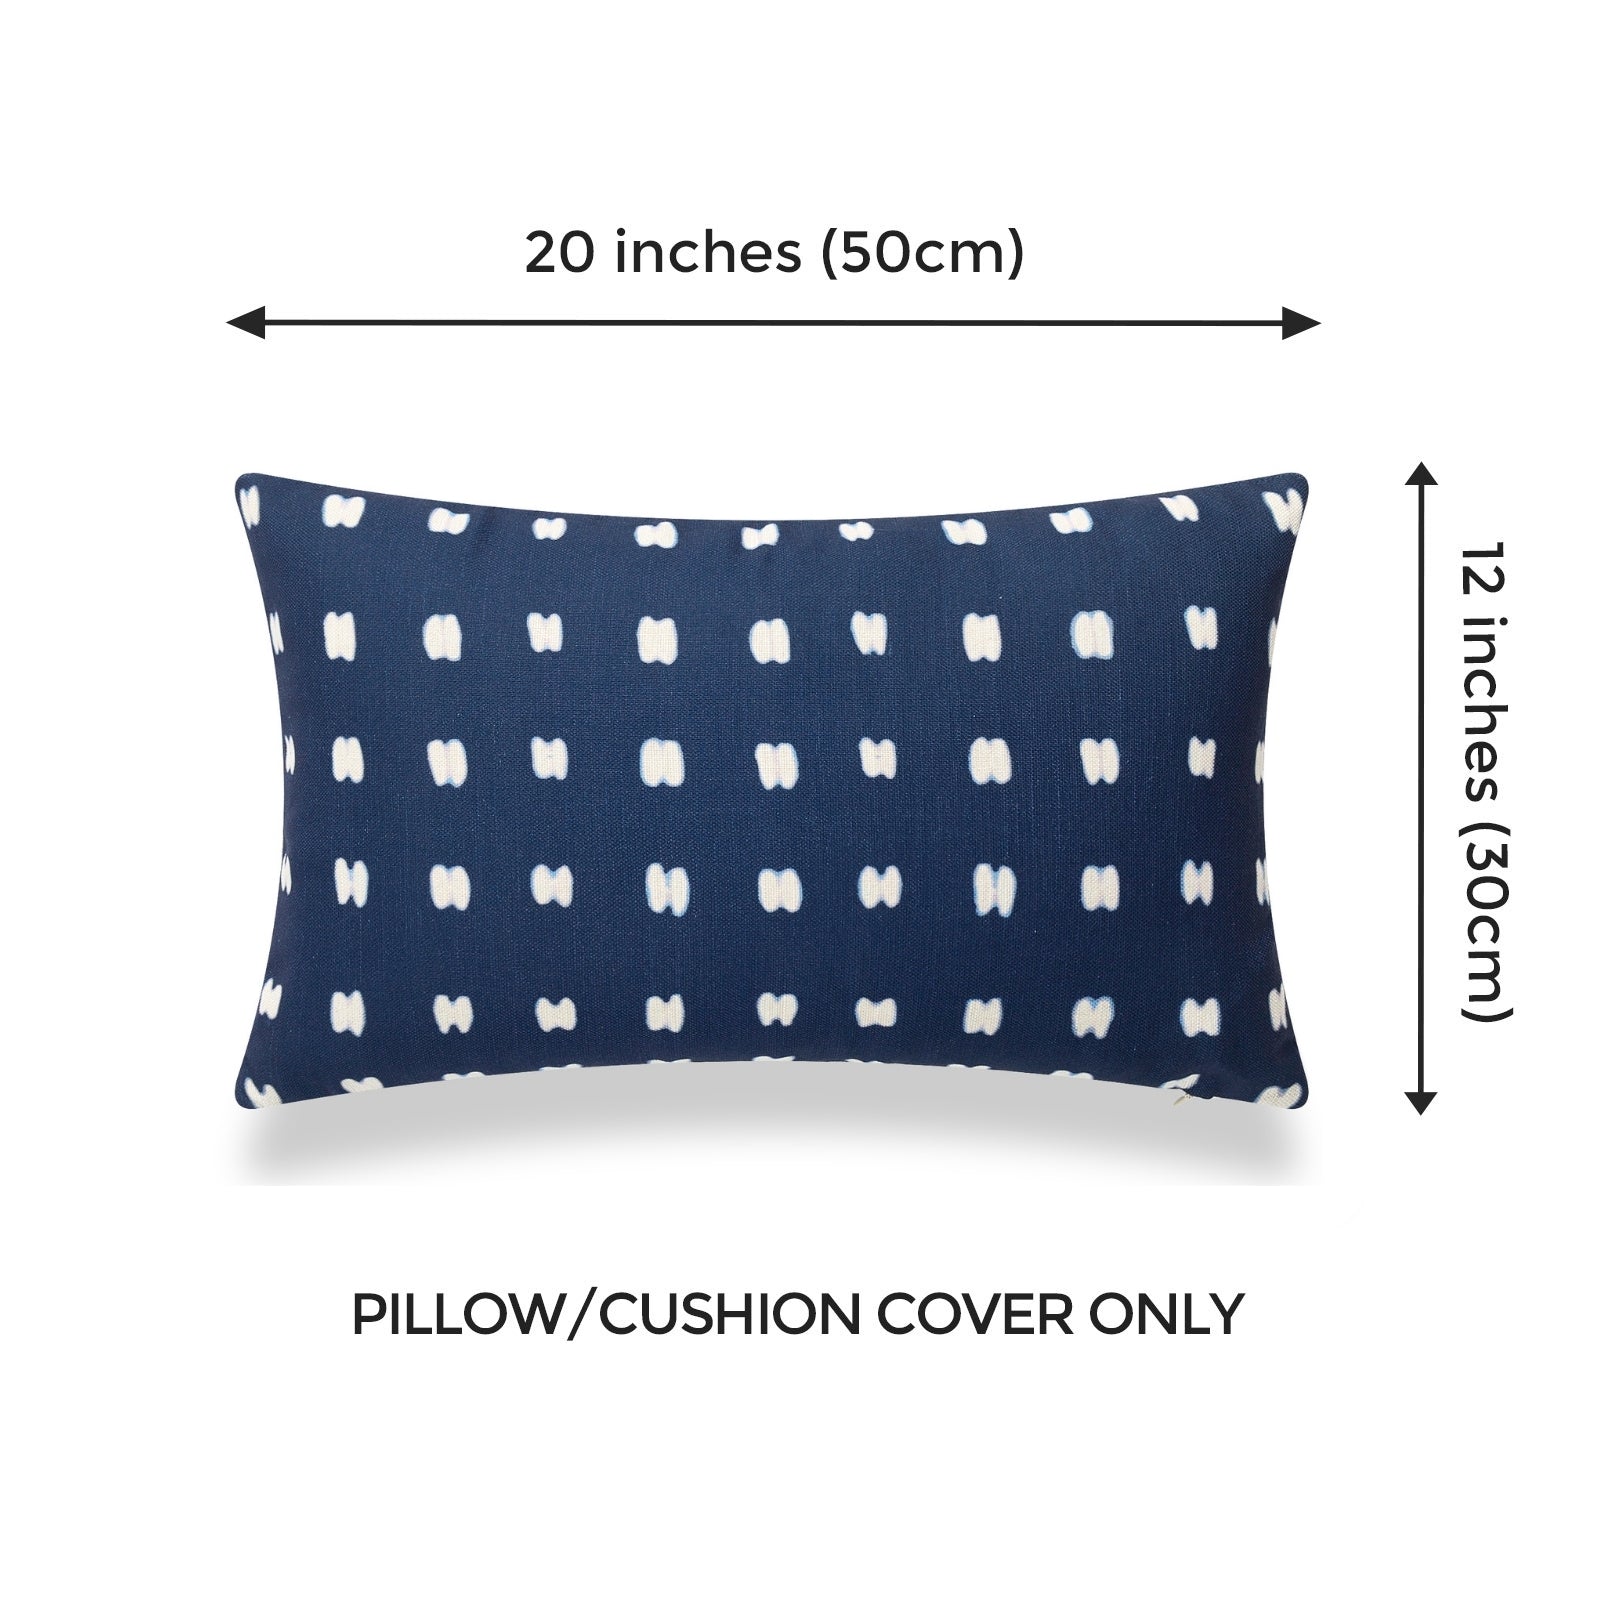 Indigo Mud Cloth Lumbar Pillow Cover, Shibori Inspired Print D, 12"x20"